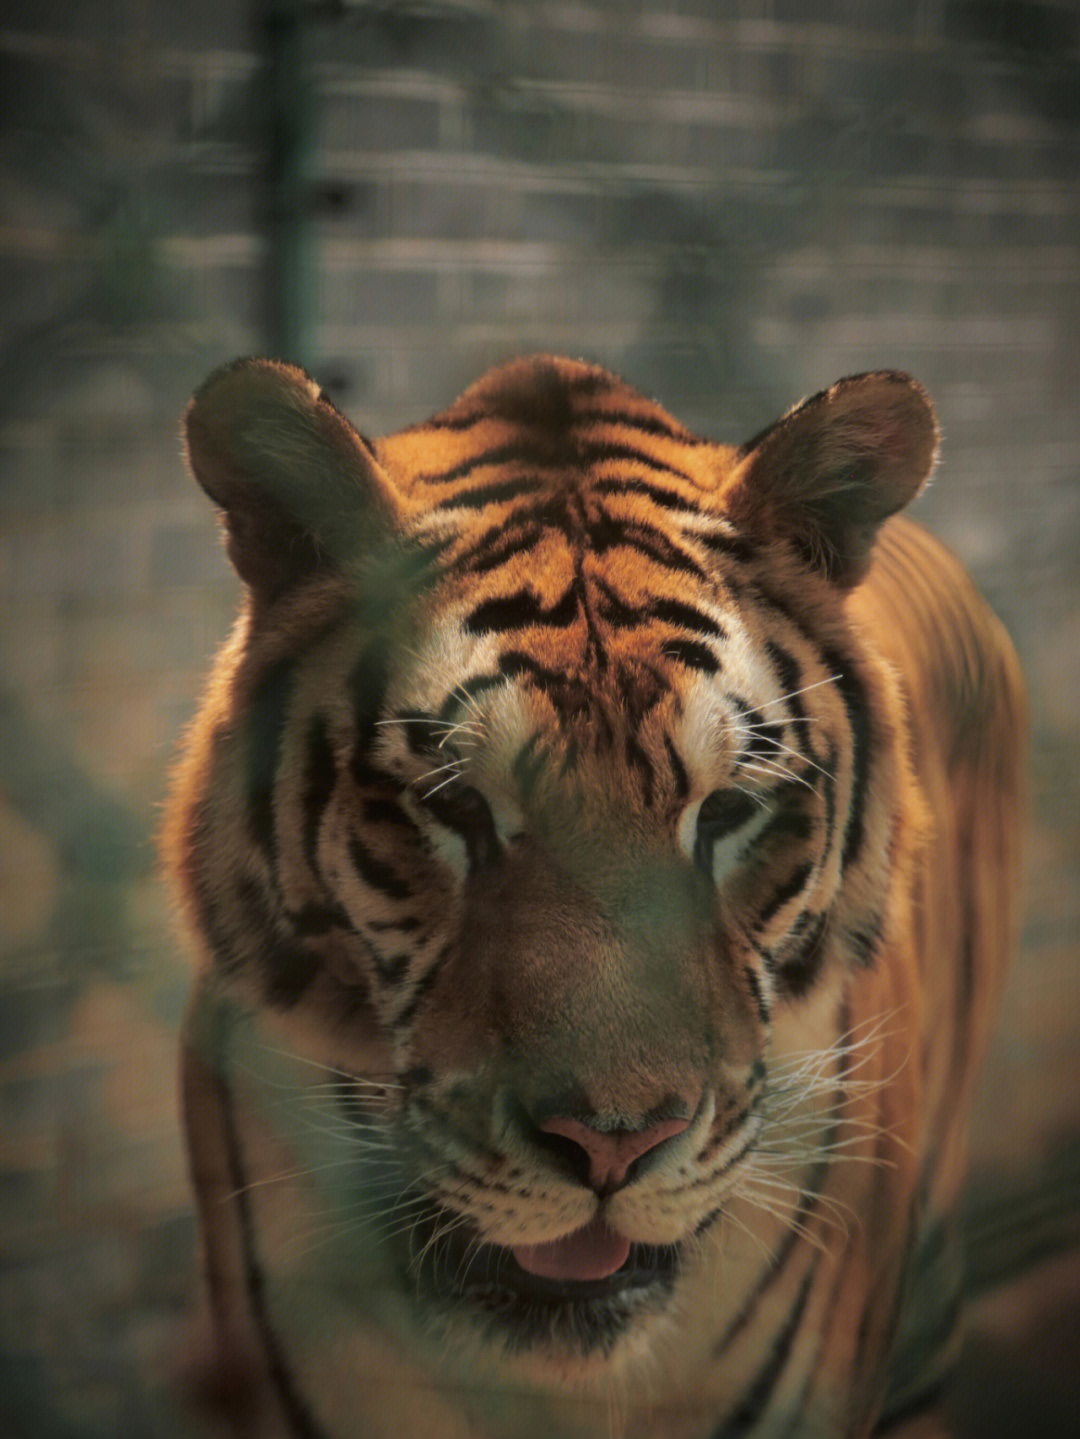 0660/人96特色:7815位于长沙县,是湖南最大的老虎繁殖基地